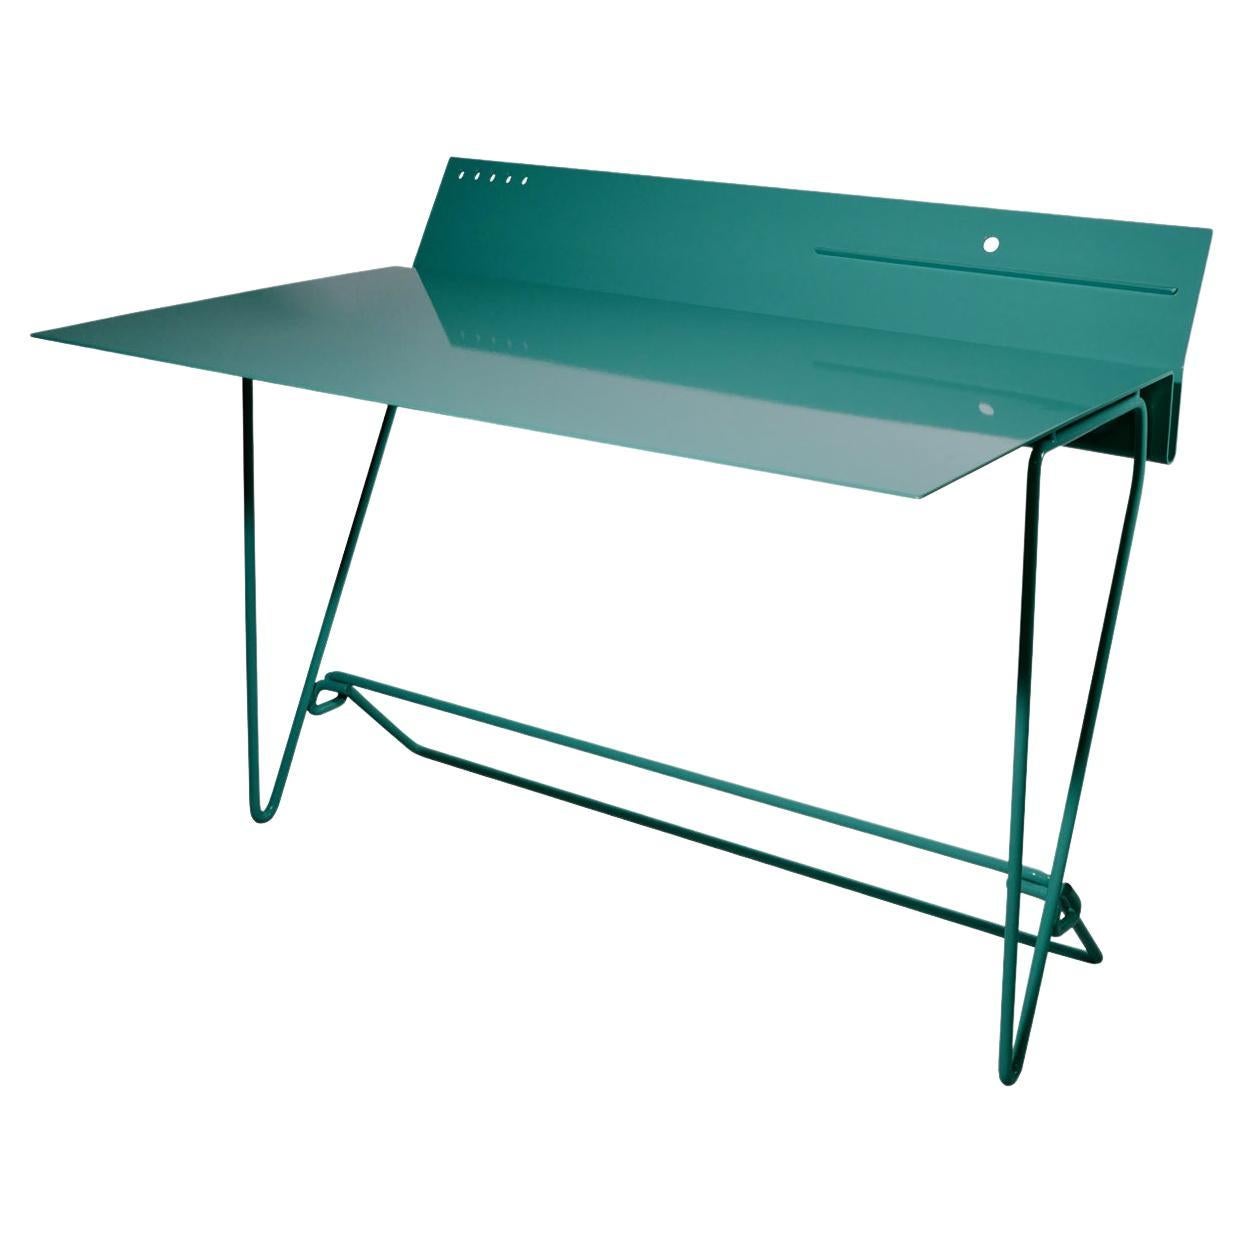 Italian Contemporary Steel Desk, "Monoplano" by Errante For Sale